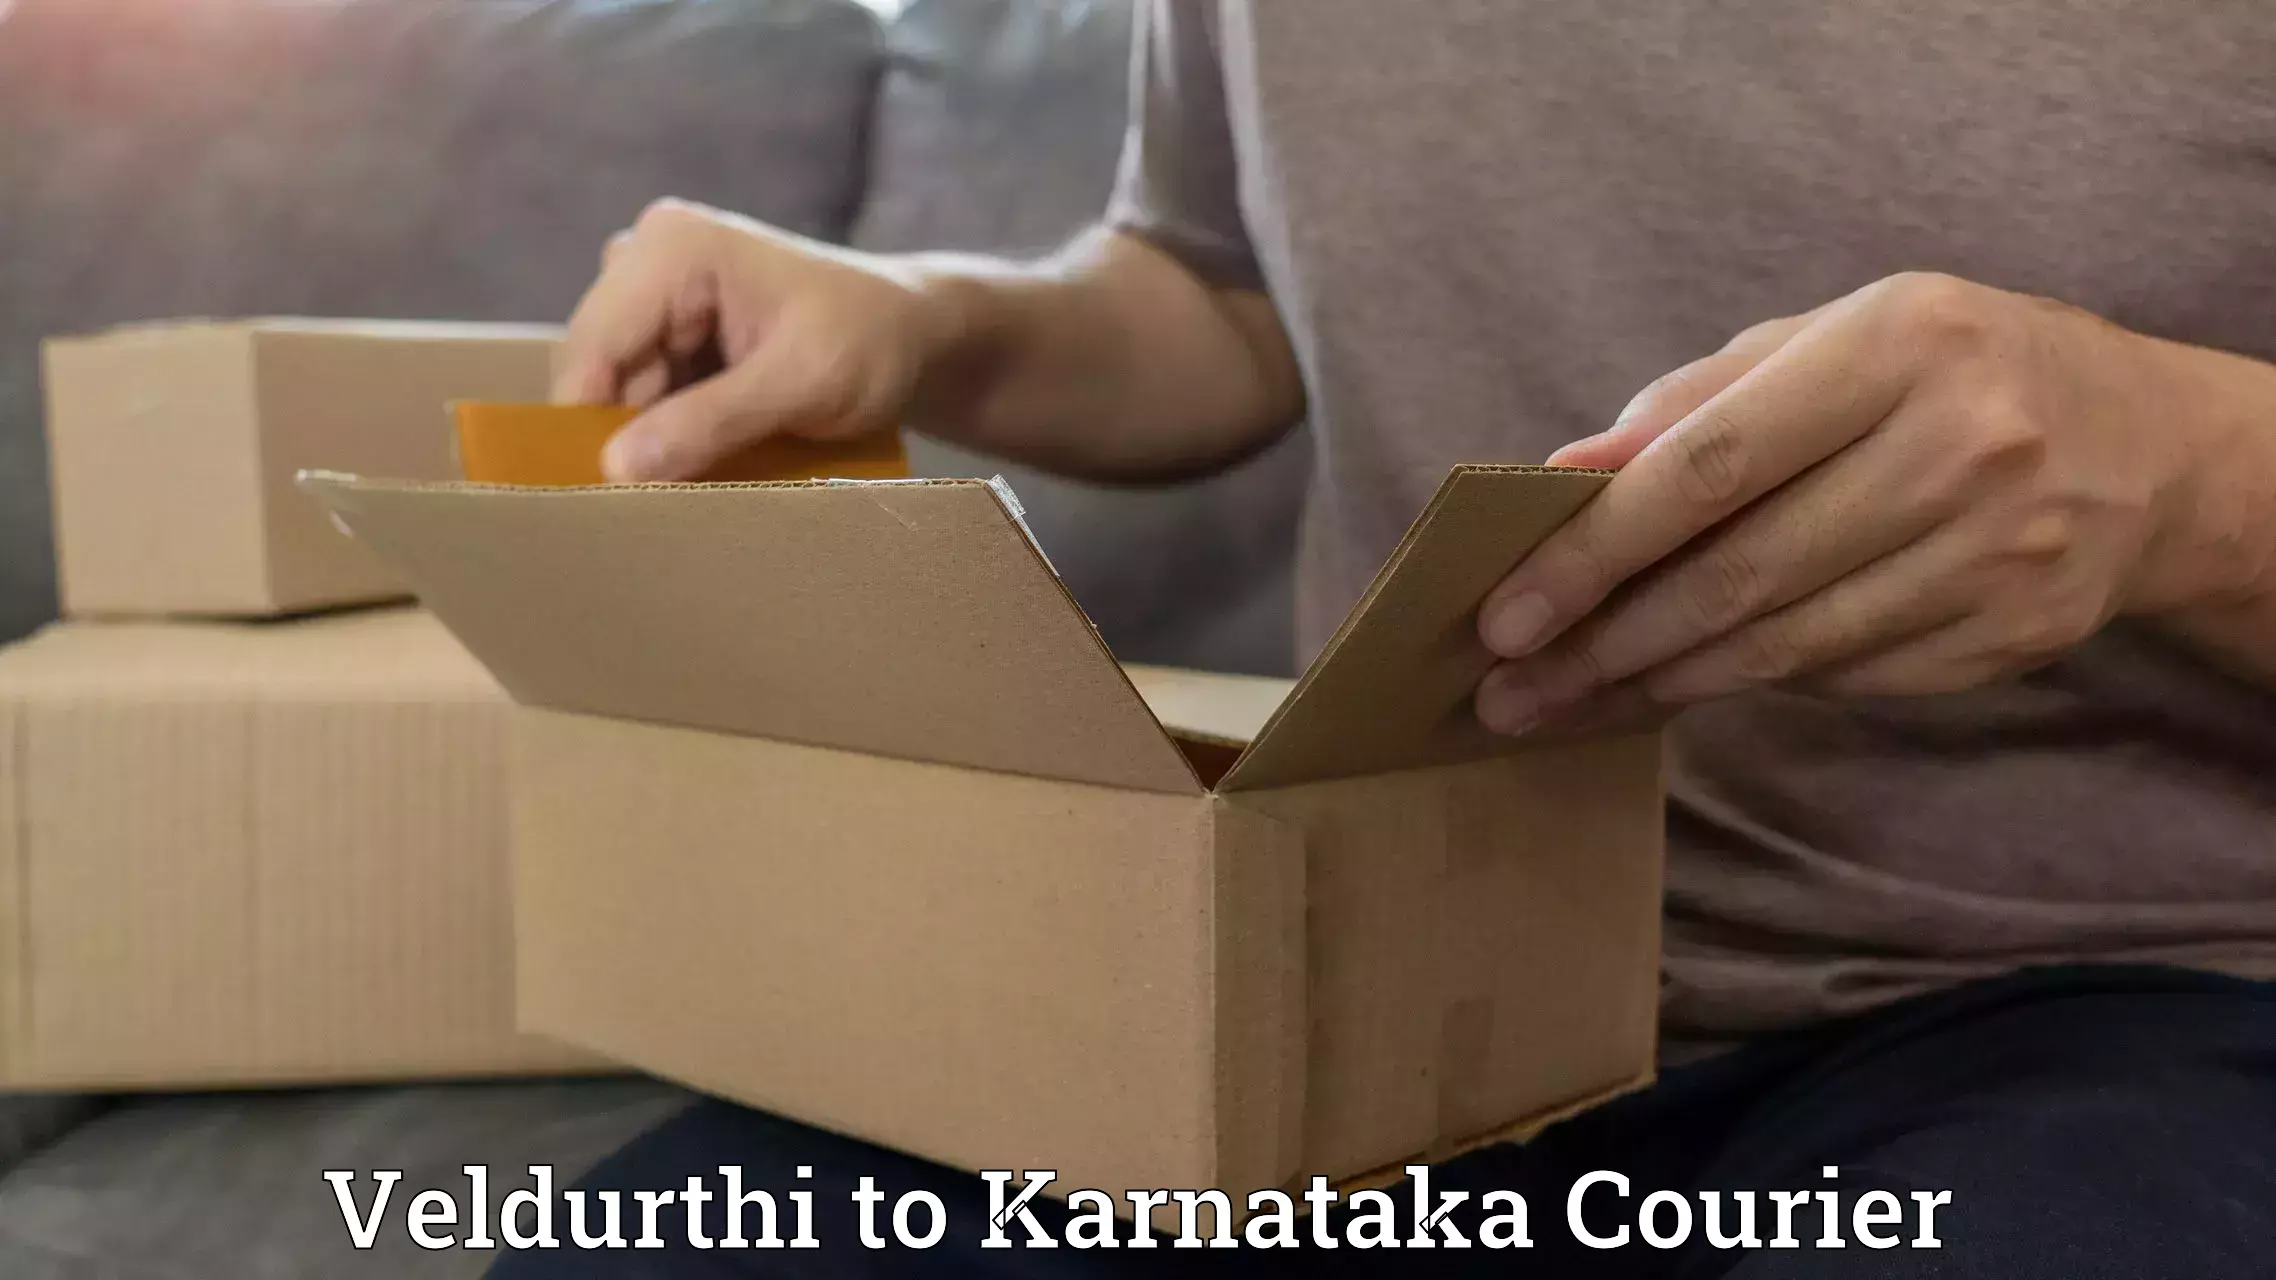 Fast delivery service Veldurthi to Karnataka